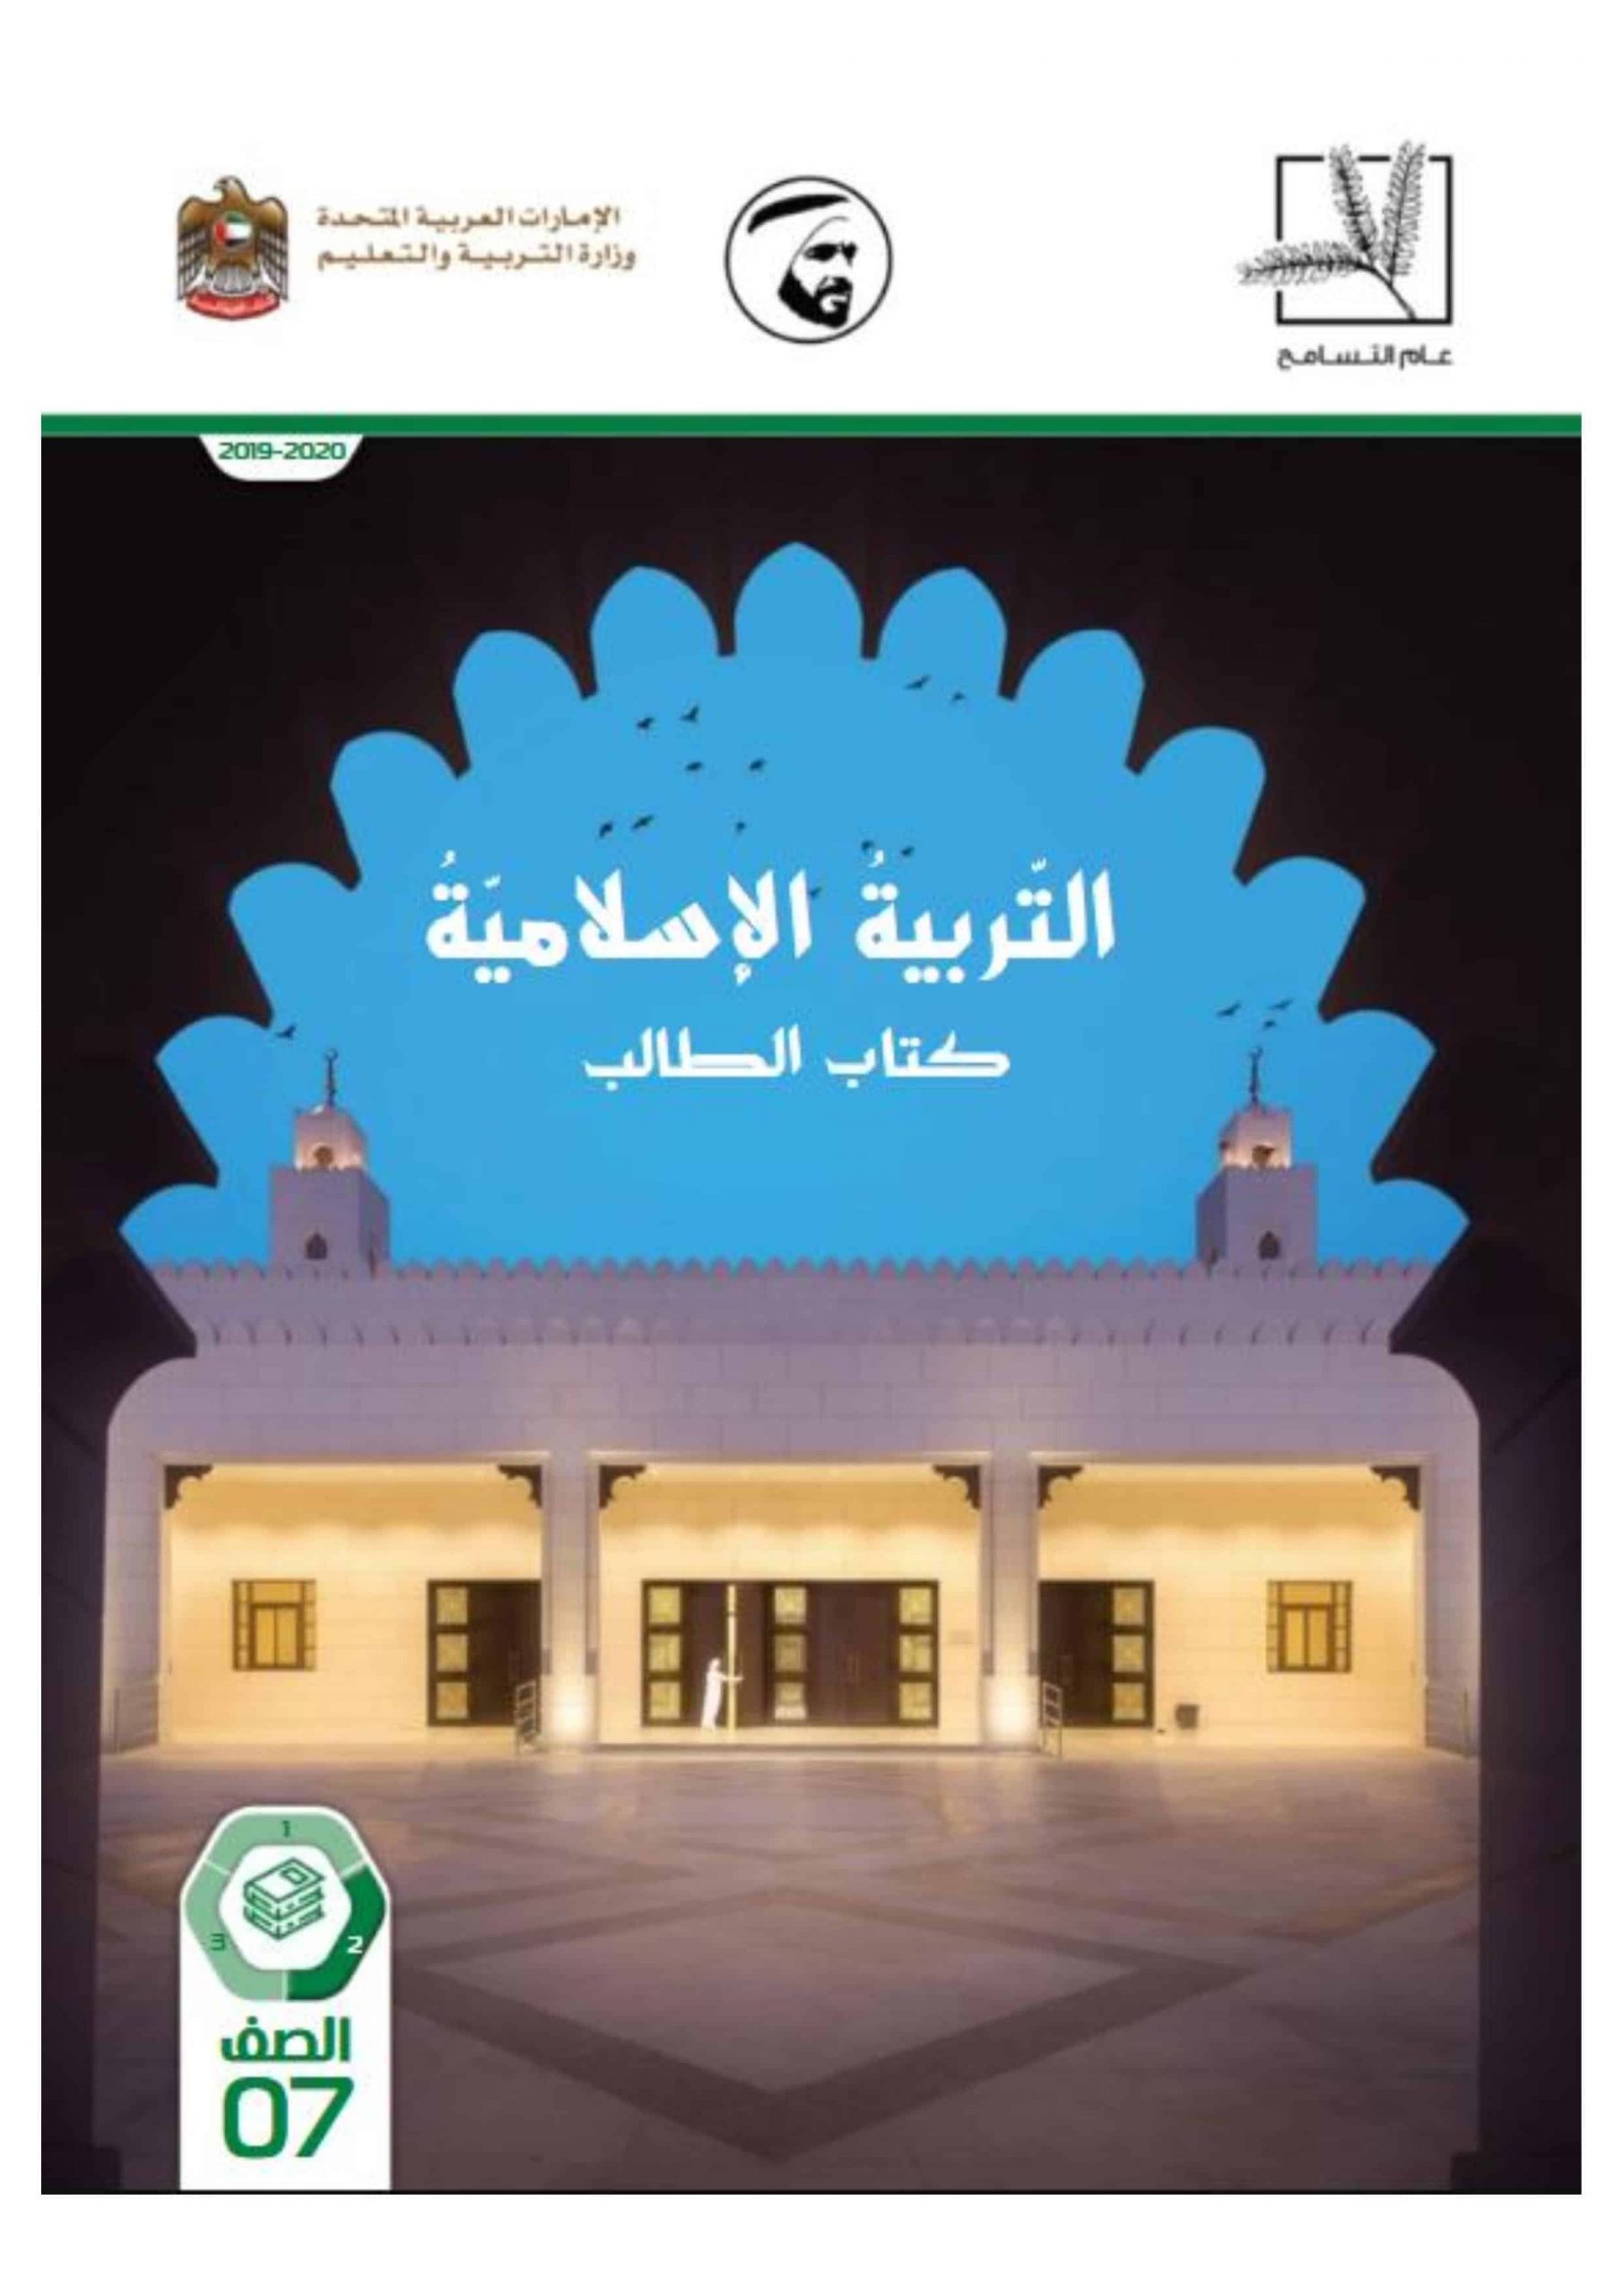 كتاب الطالب الفصل الدراسي الثاني 2019-2020 الصف السابع مادة التربية الاسلامية